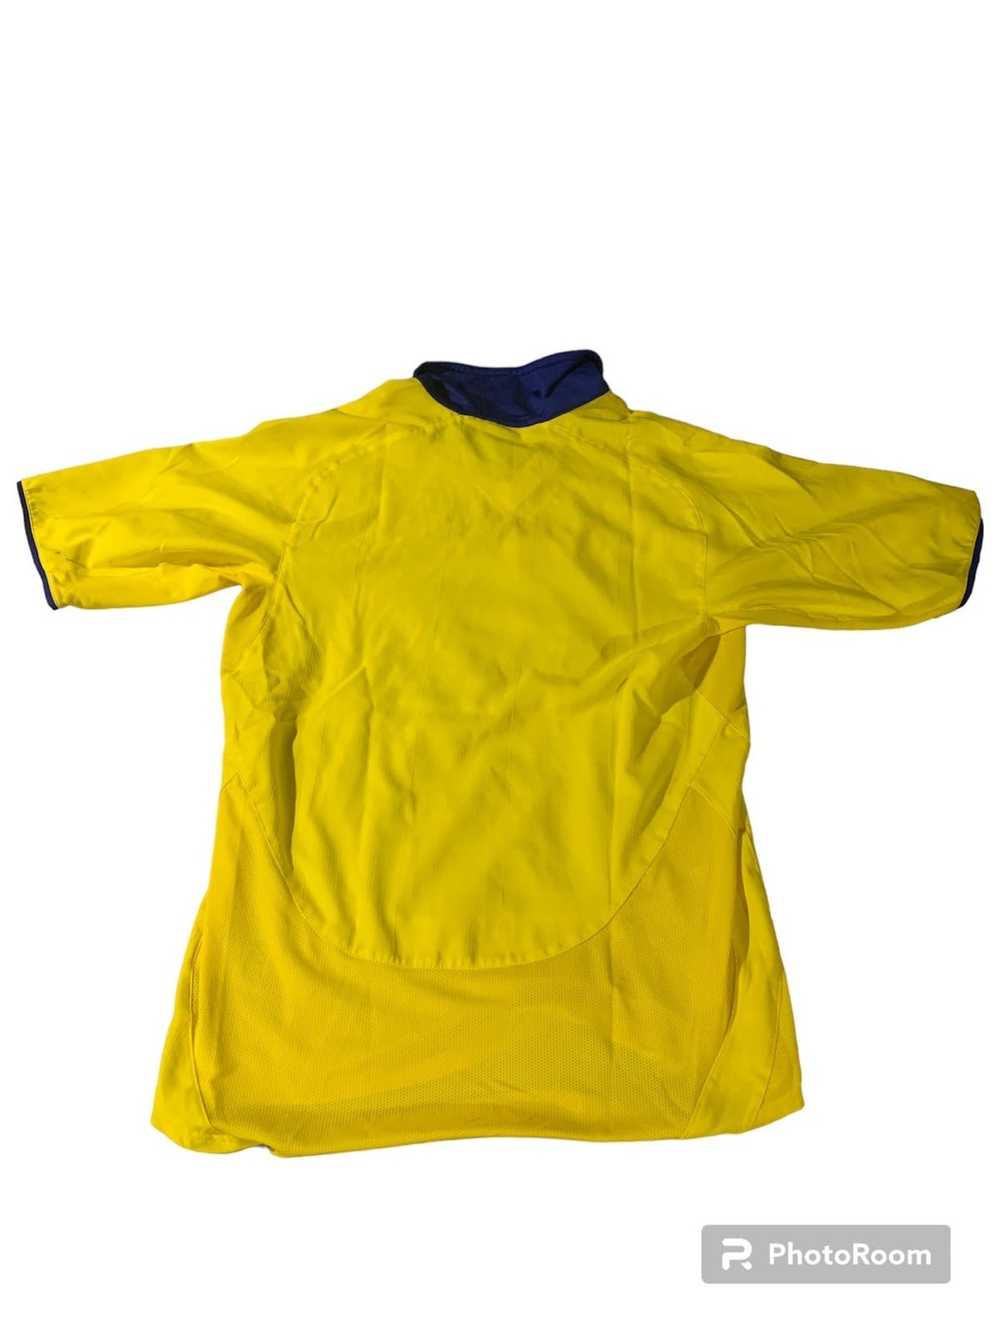 Nike 2003-2005 Arsenal Away Shirt - image 2